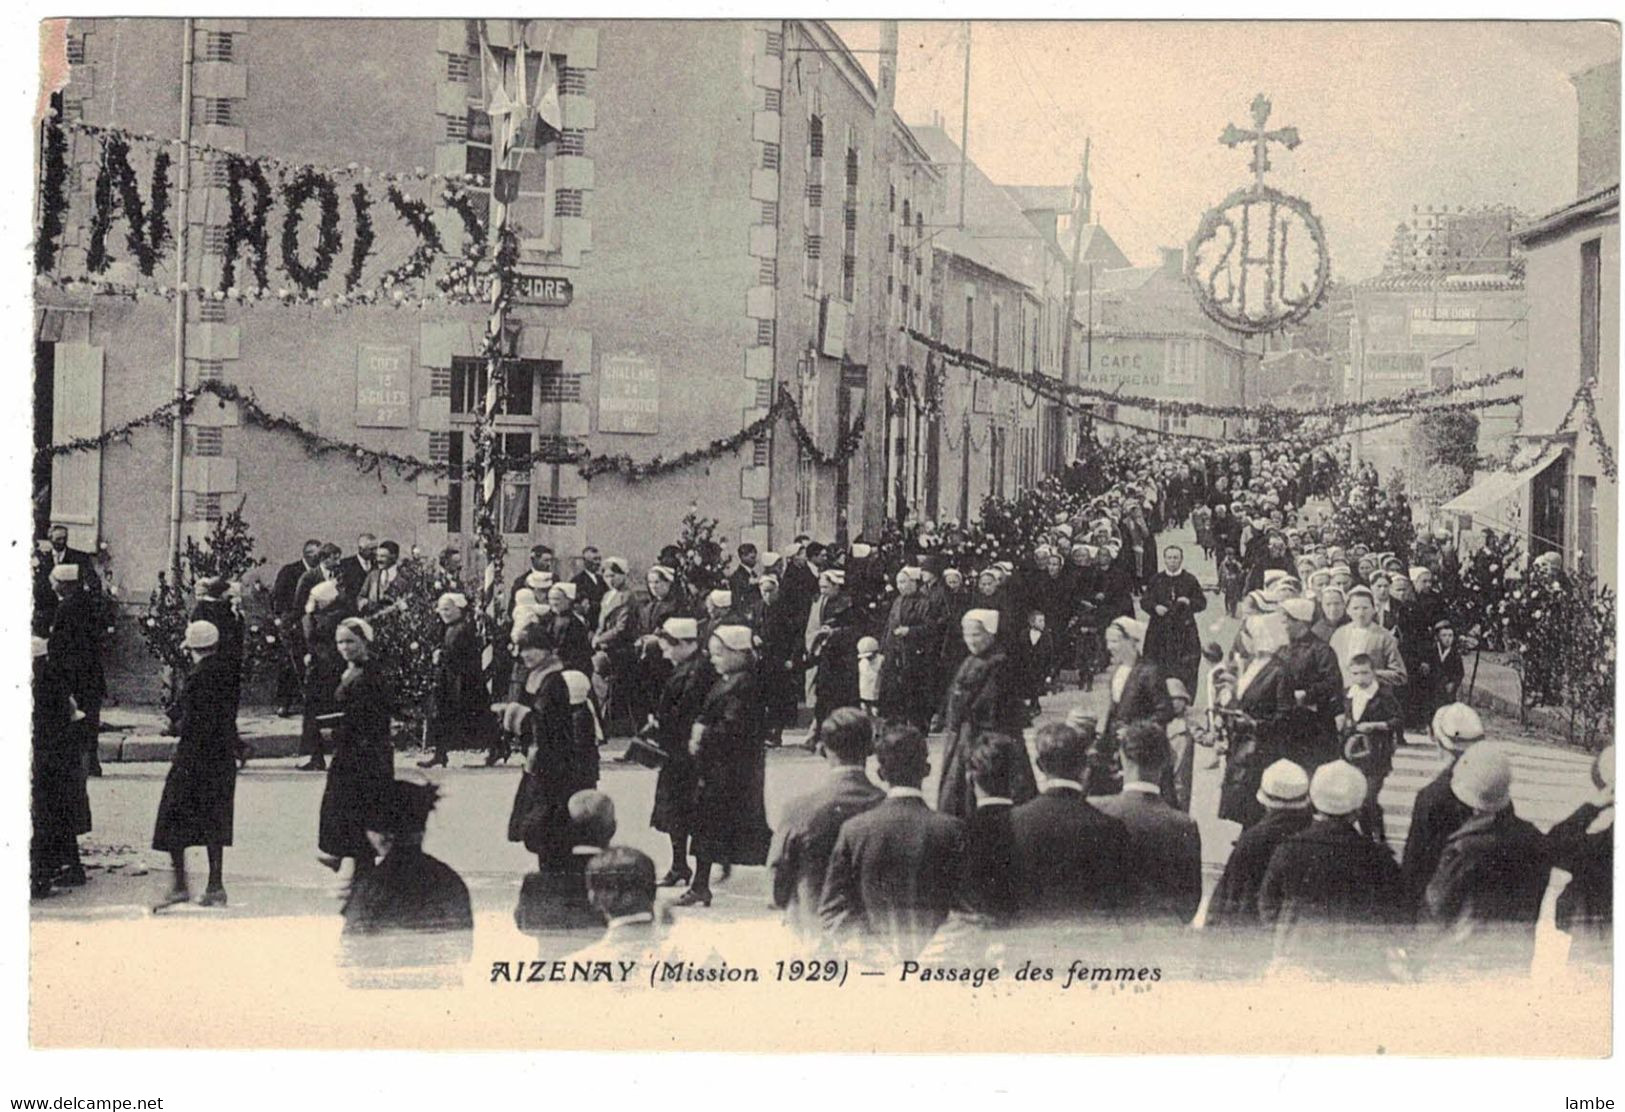 AIZENAY - Mission 1929 - 10 cartes postales - état divers ( voir note )